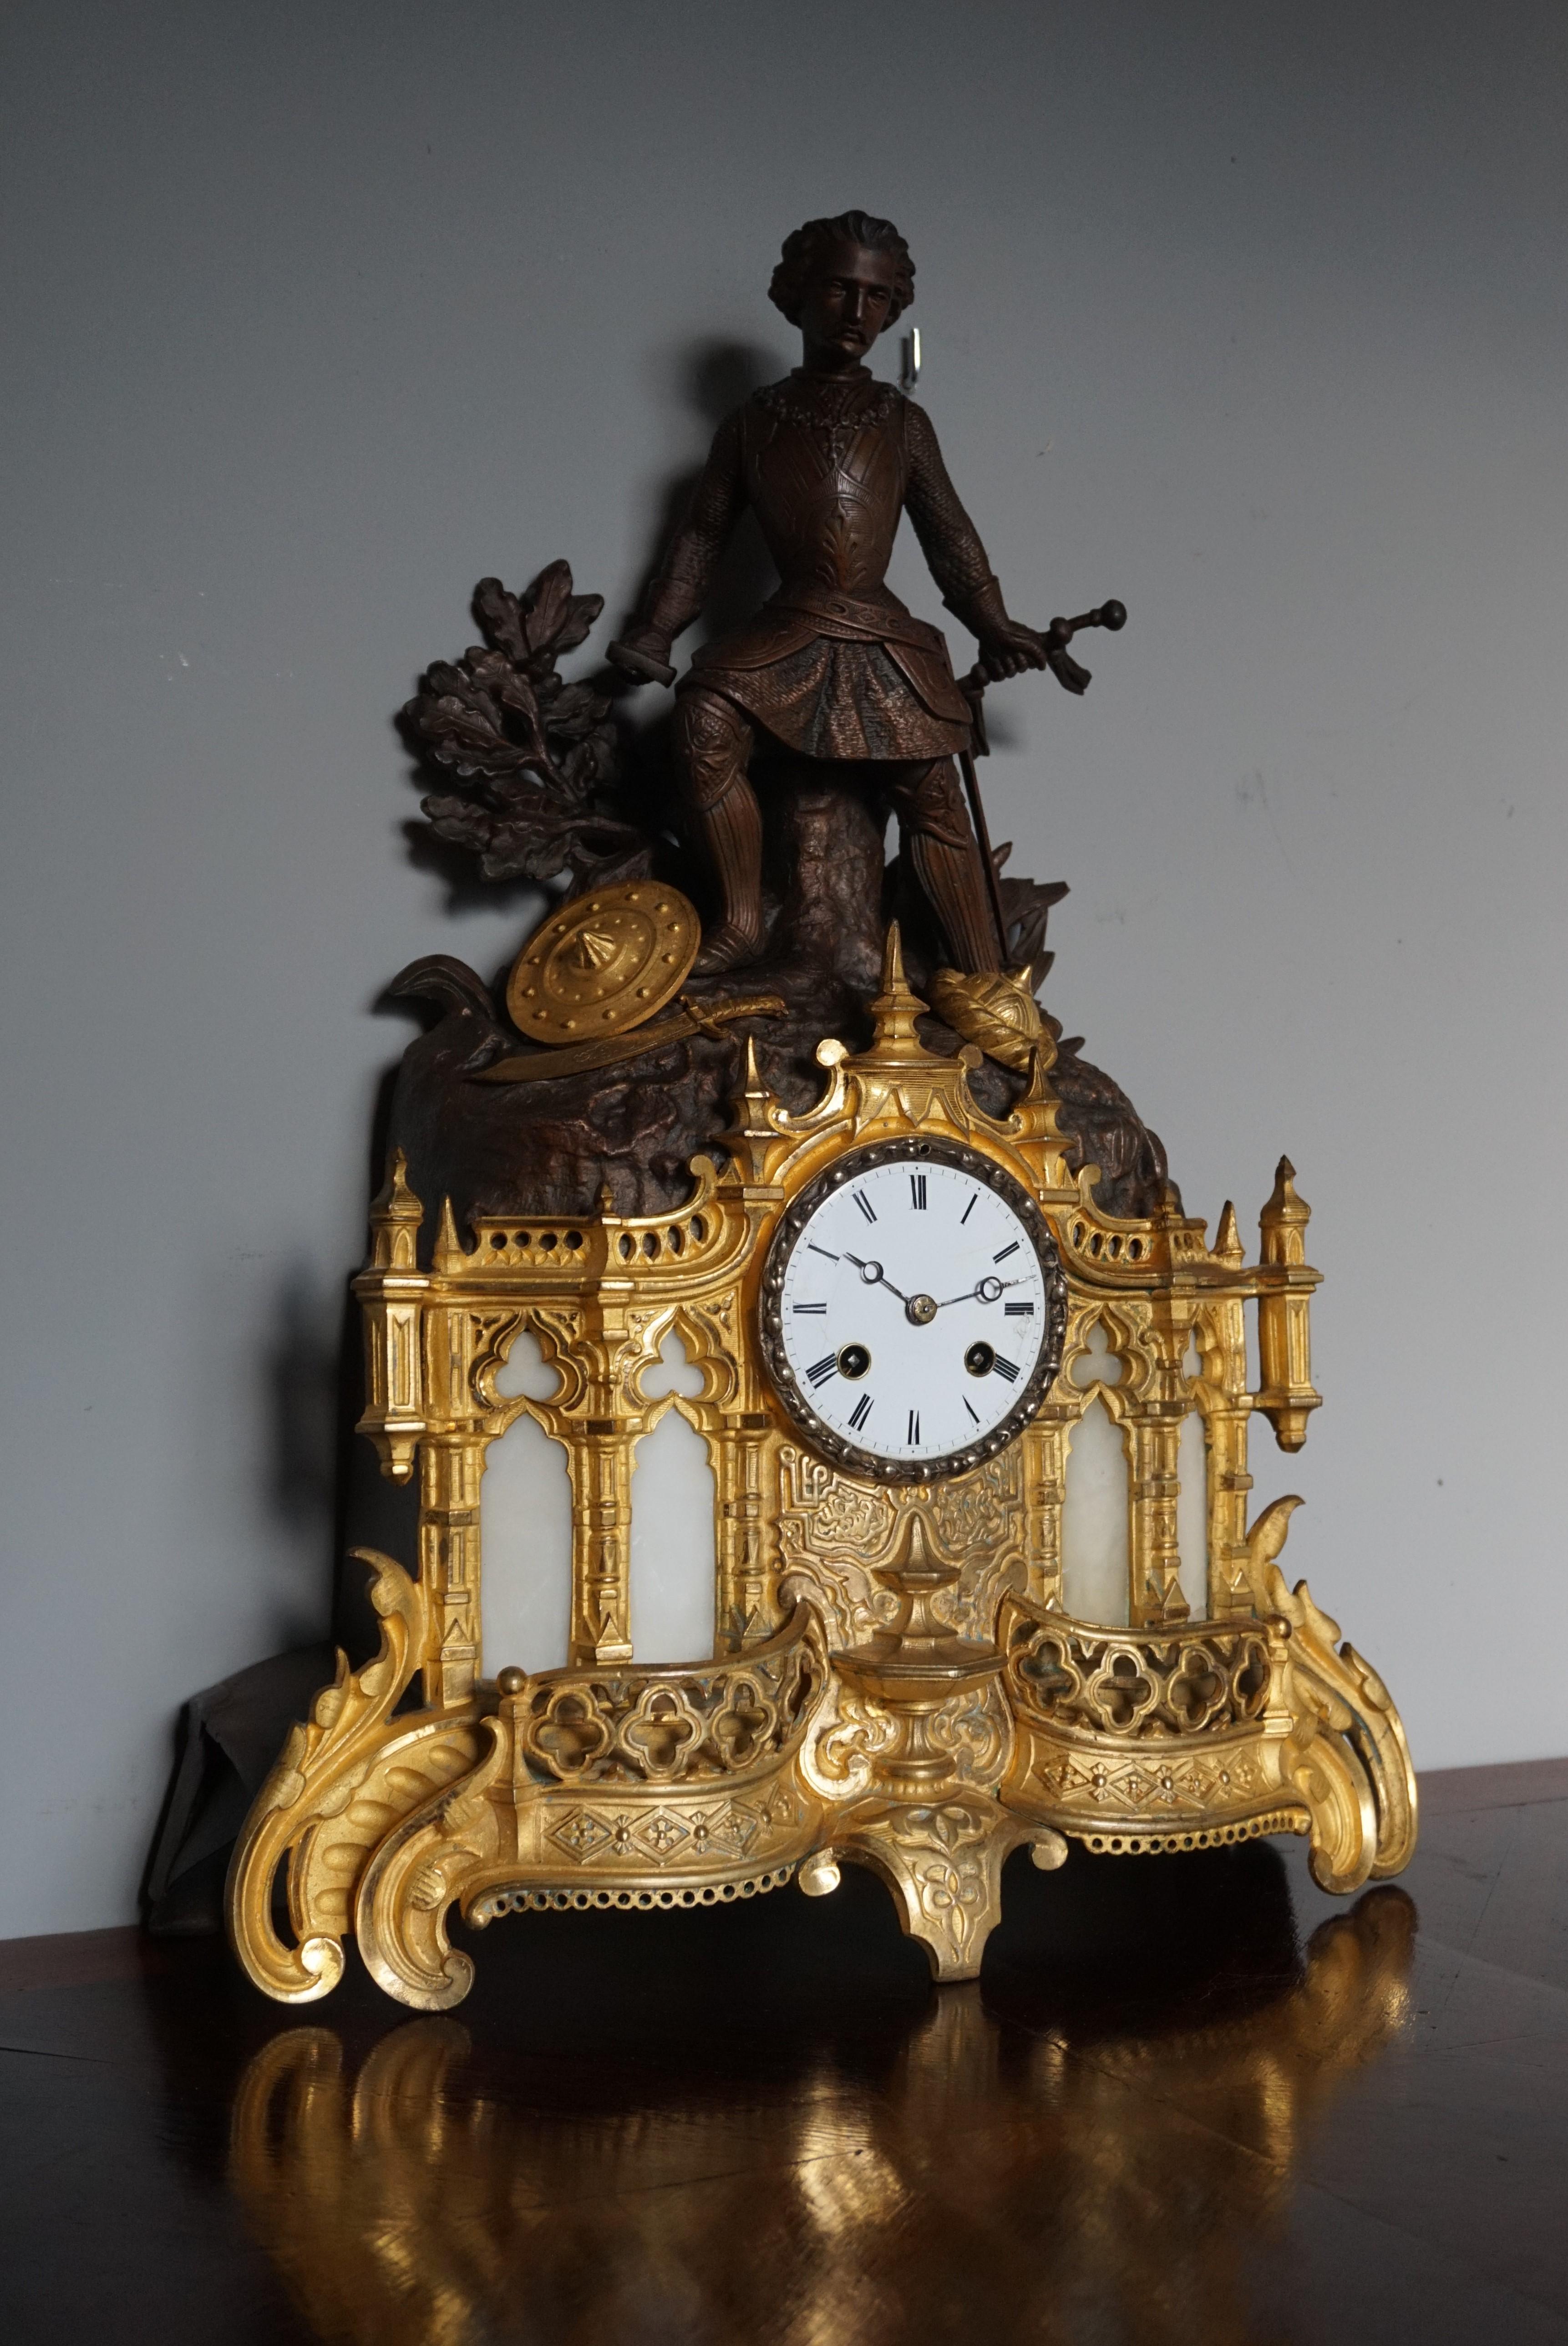 Horloge sculpturale en bronze doré et zinc au design cathédrale.

Cette horloge de grande taille, fabriquée à la main, impressionnante et significative, est dotée de divers éléments d'église gothiques. En fait, la moitié inférieure de cette horloge